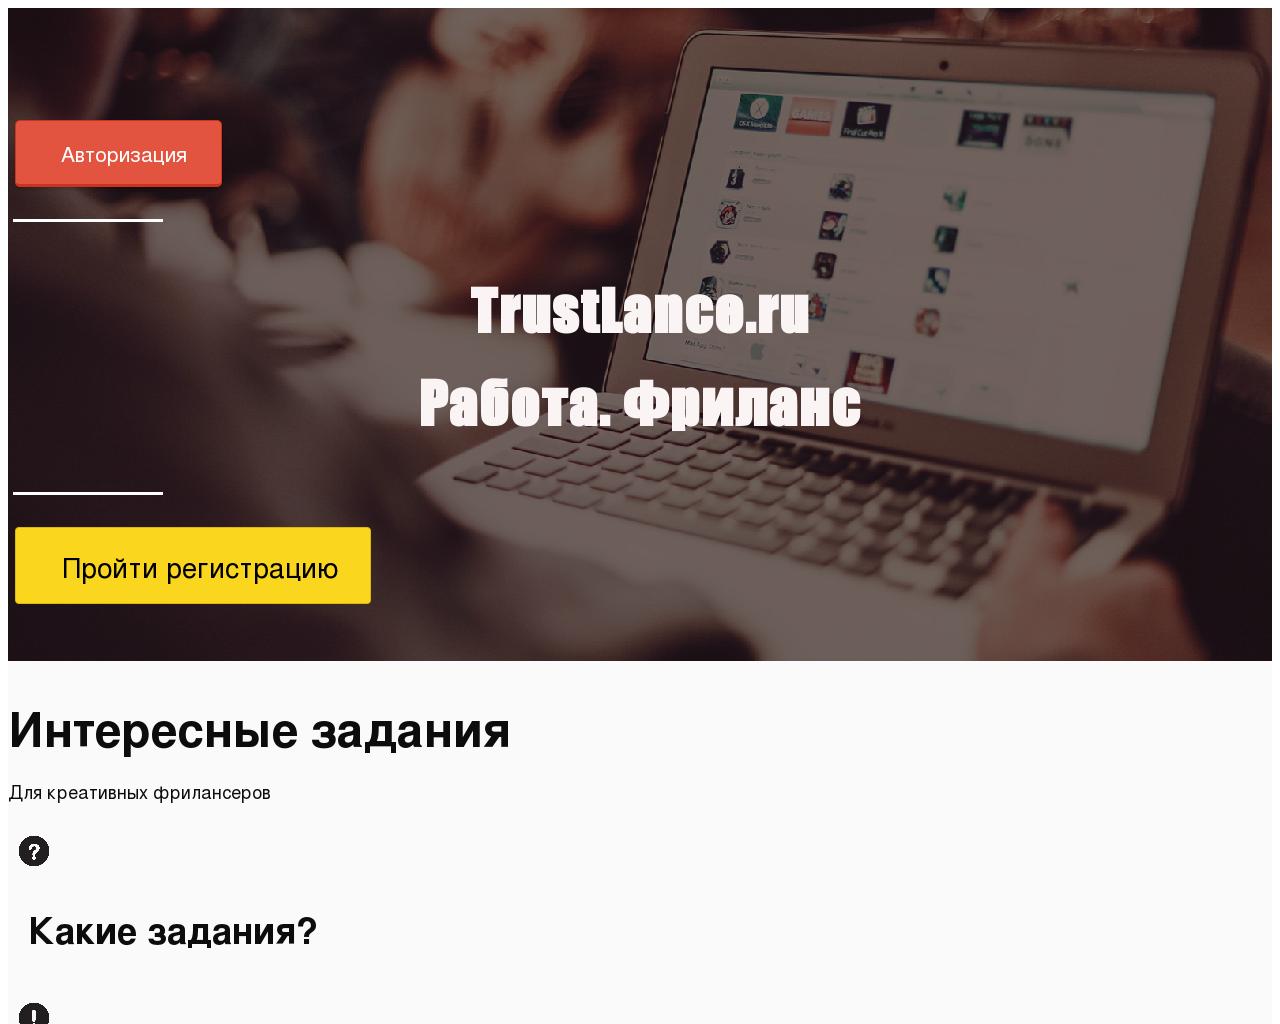 Изображение сайта trustlance.ru в разрешении 1280x1024